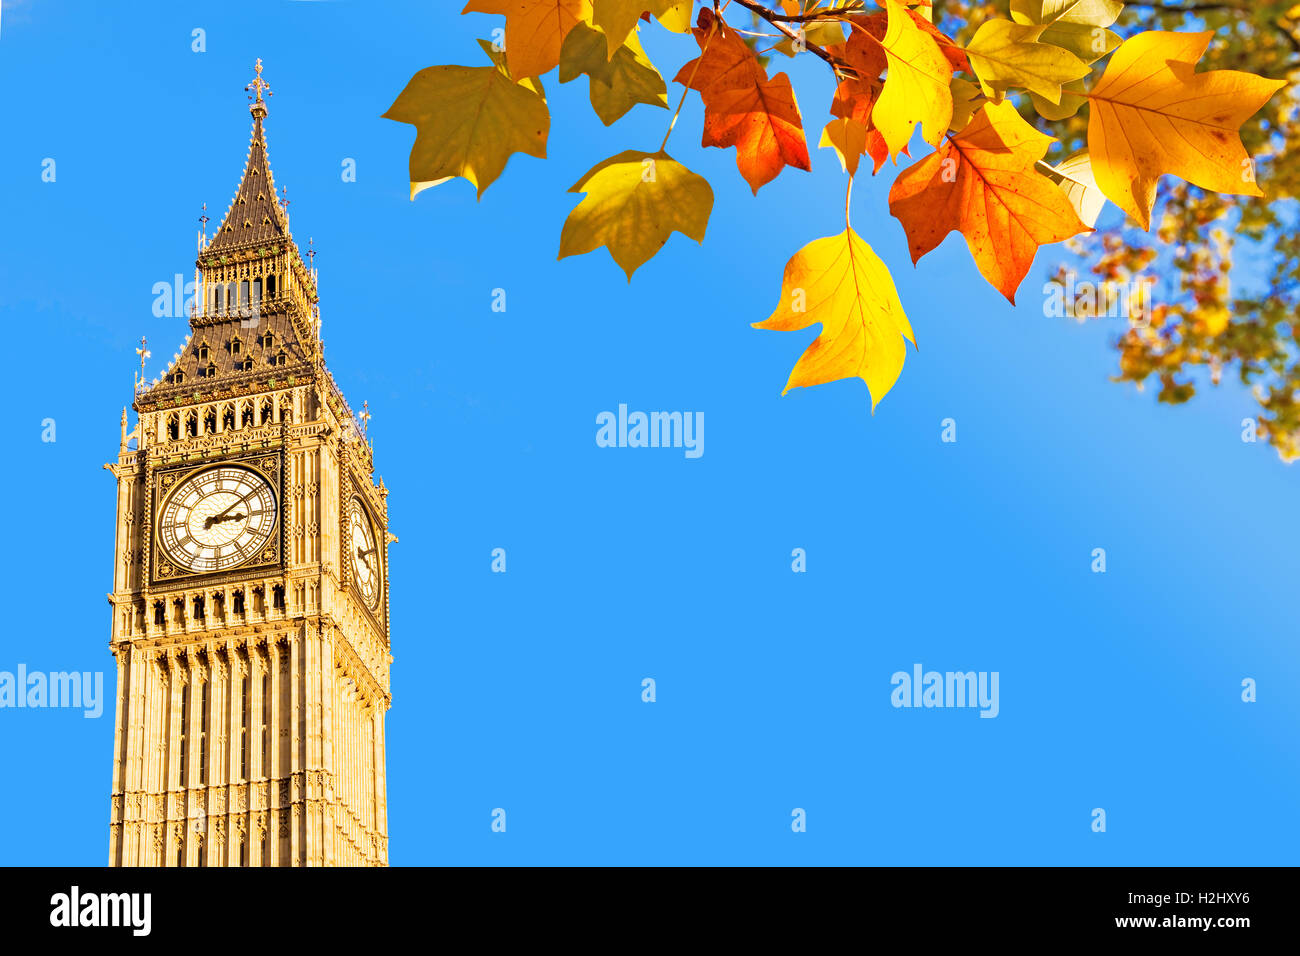 El Big Ben y las hojas otoñales, Londres, Reino Unido. Foto de stock